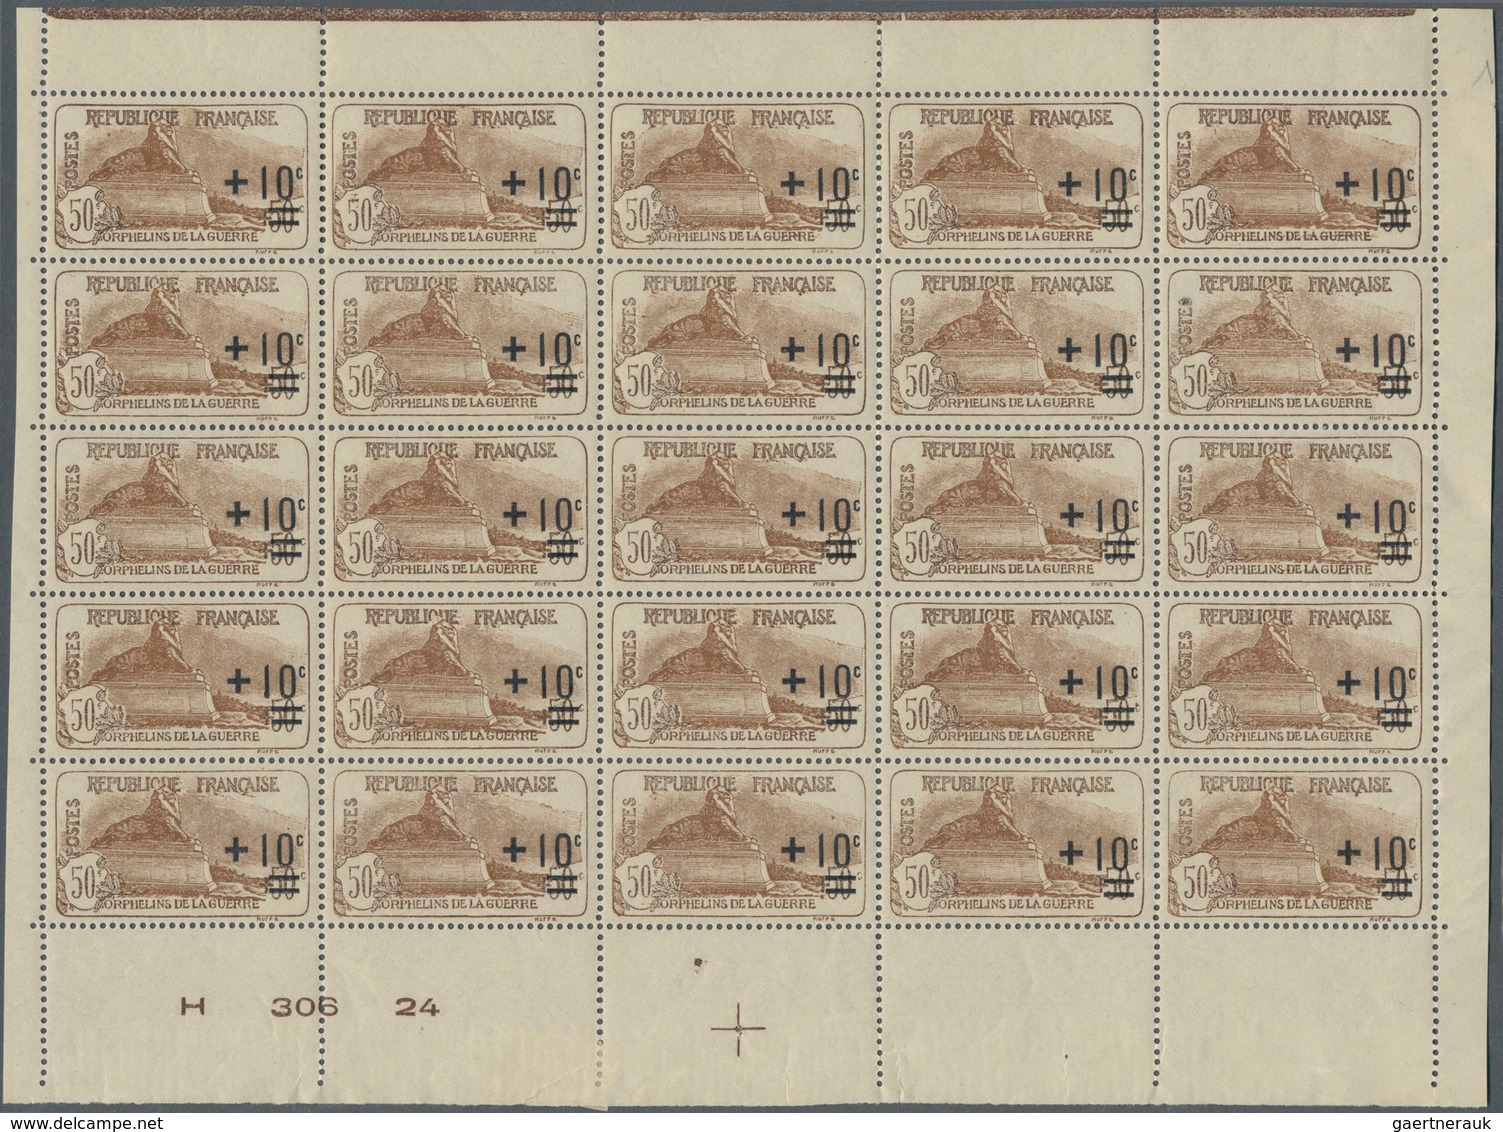 Frankreich: 1922, War Orphans Revaluation Overprints, 2c.+1c.-5fr.+1fr., complete set of eight value